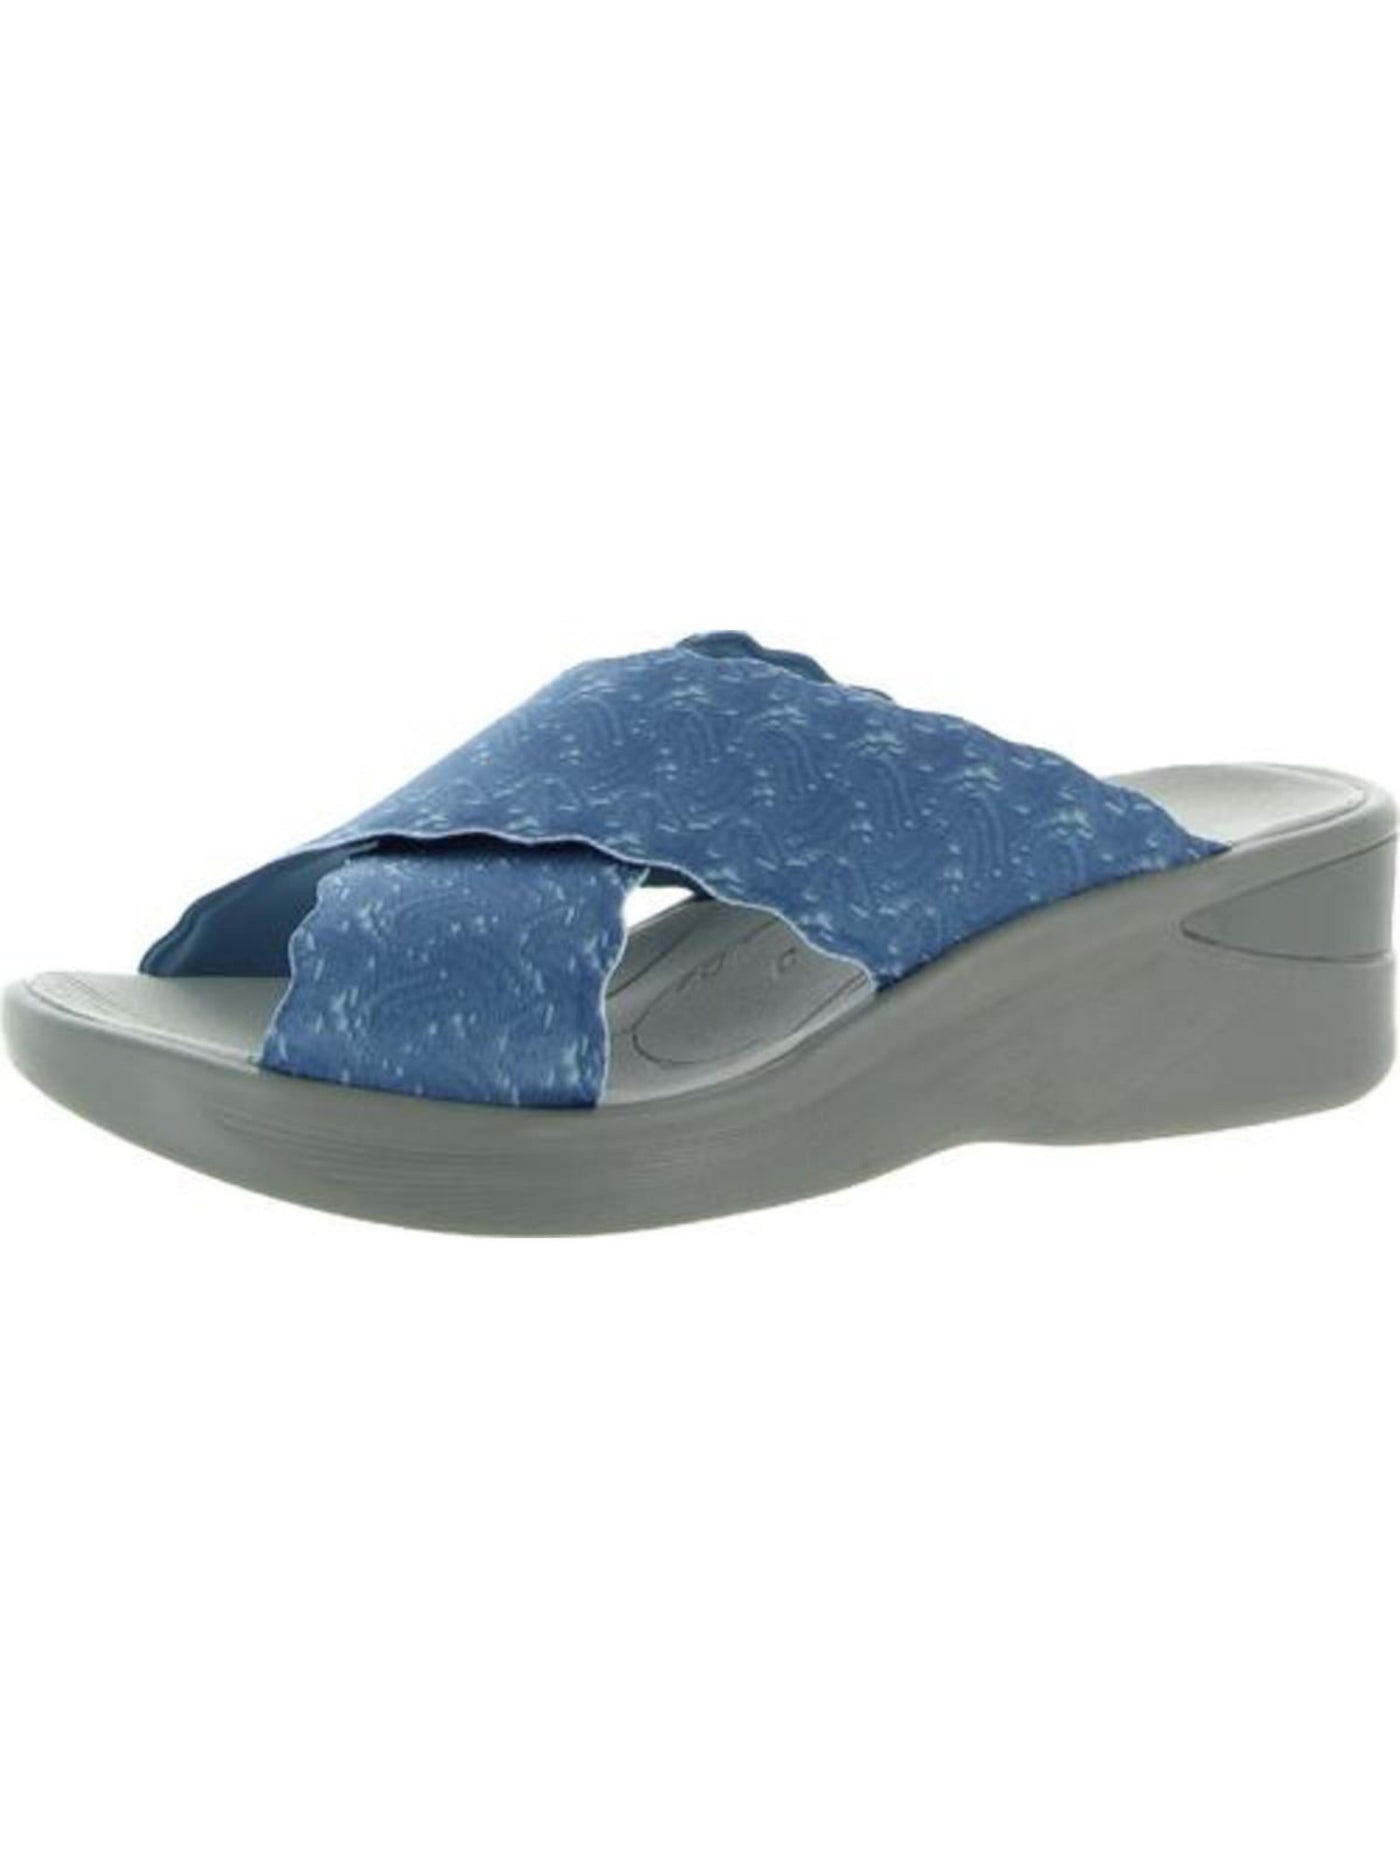 BZEES Womens Blue Crisscrossed Scalloped Straps Sahara Round Toe Wedge Slip On Slide Sandals 8.5 M